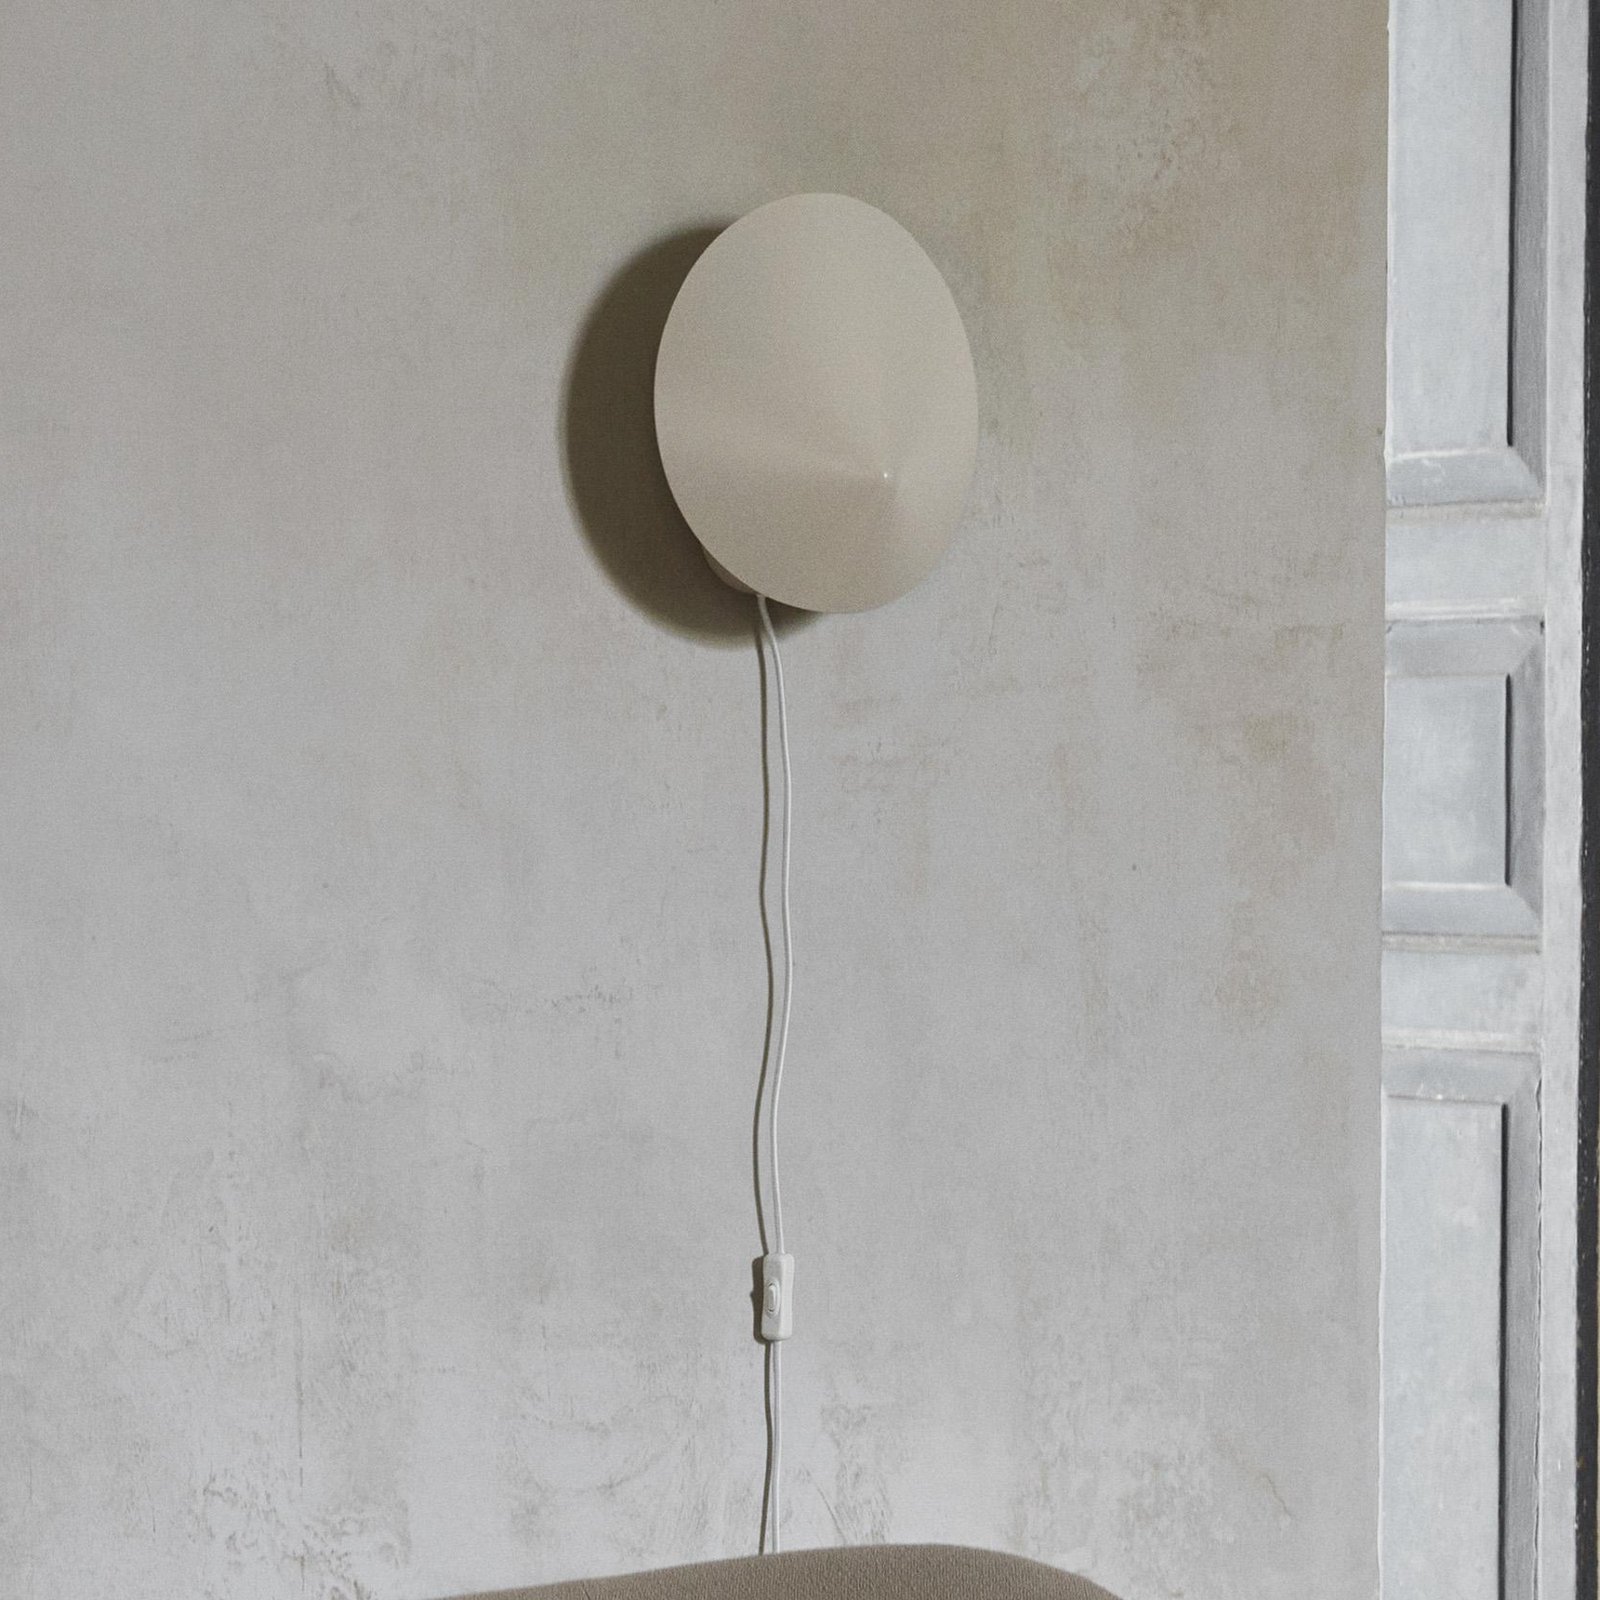 ferm LIVING Arum wandlamp, beige, 29 cm, stekker